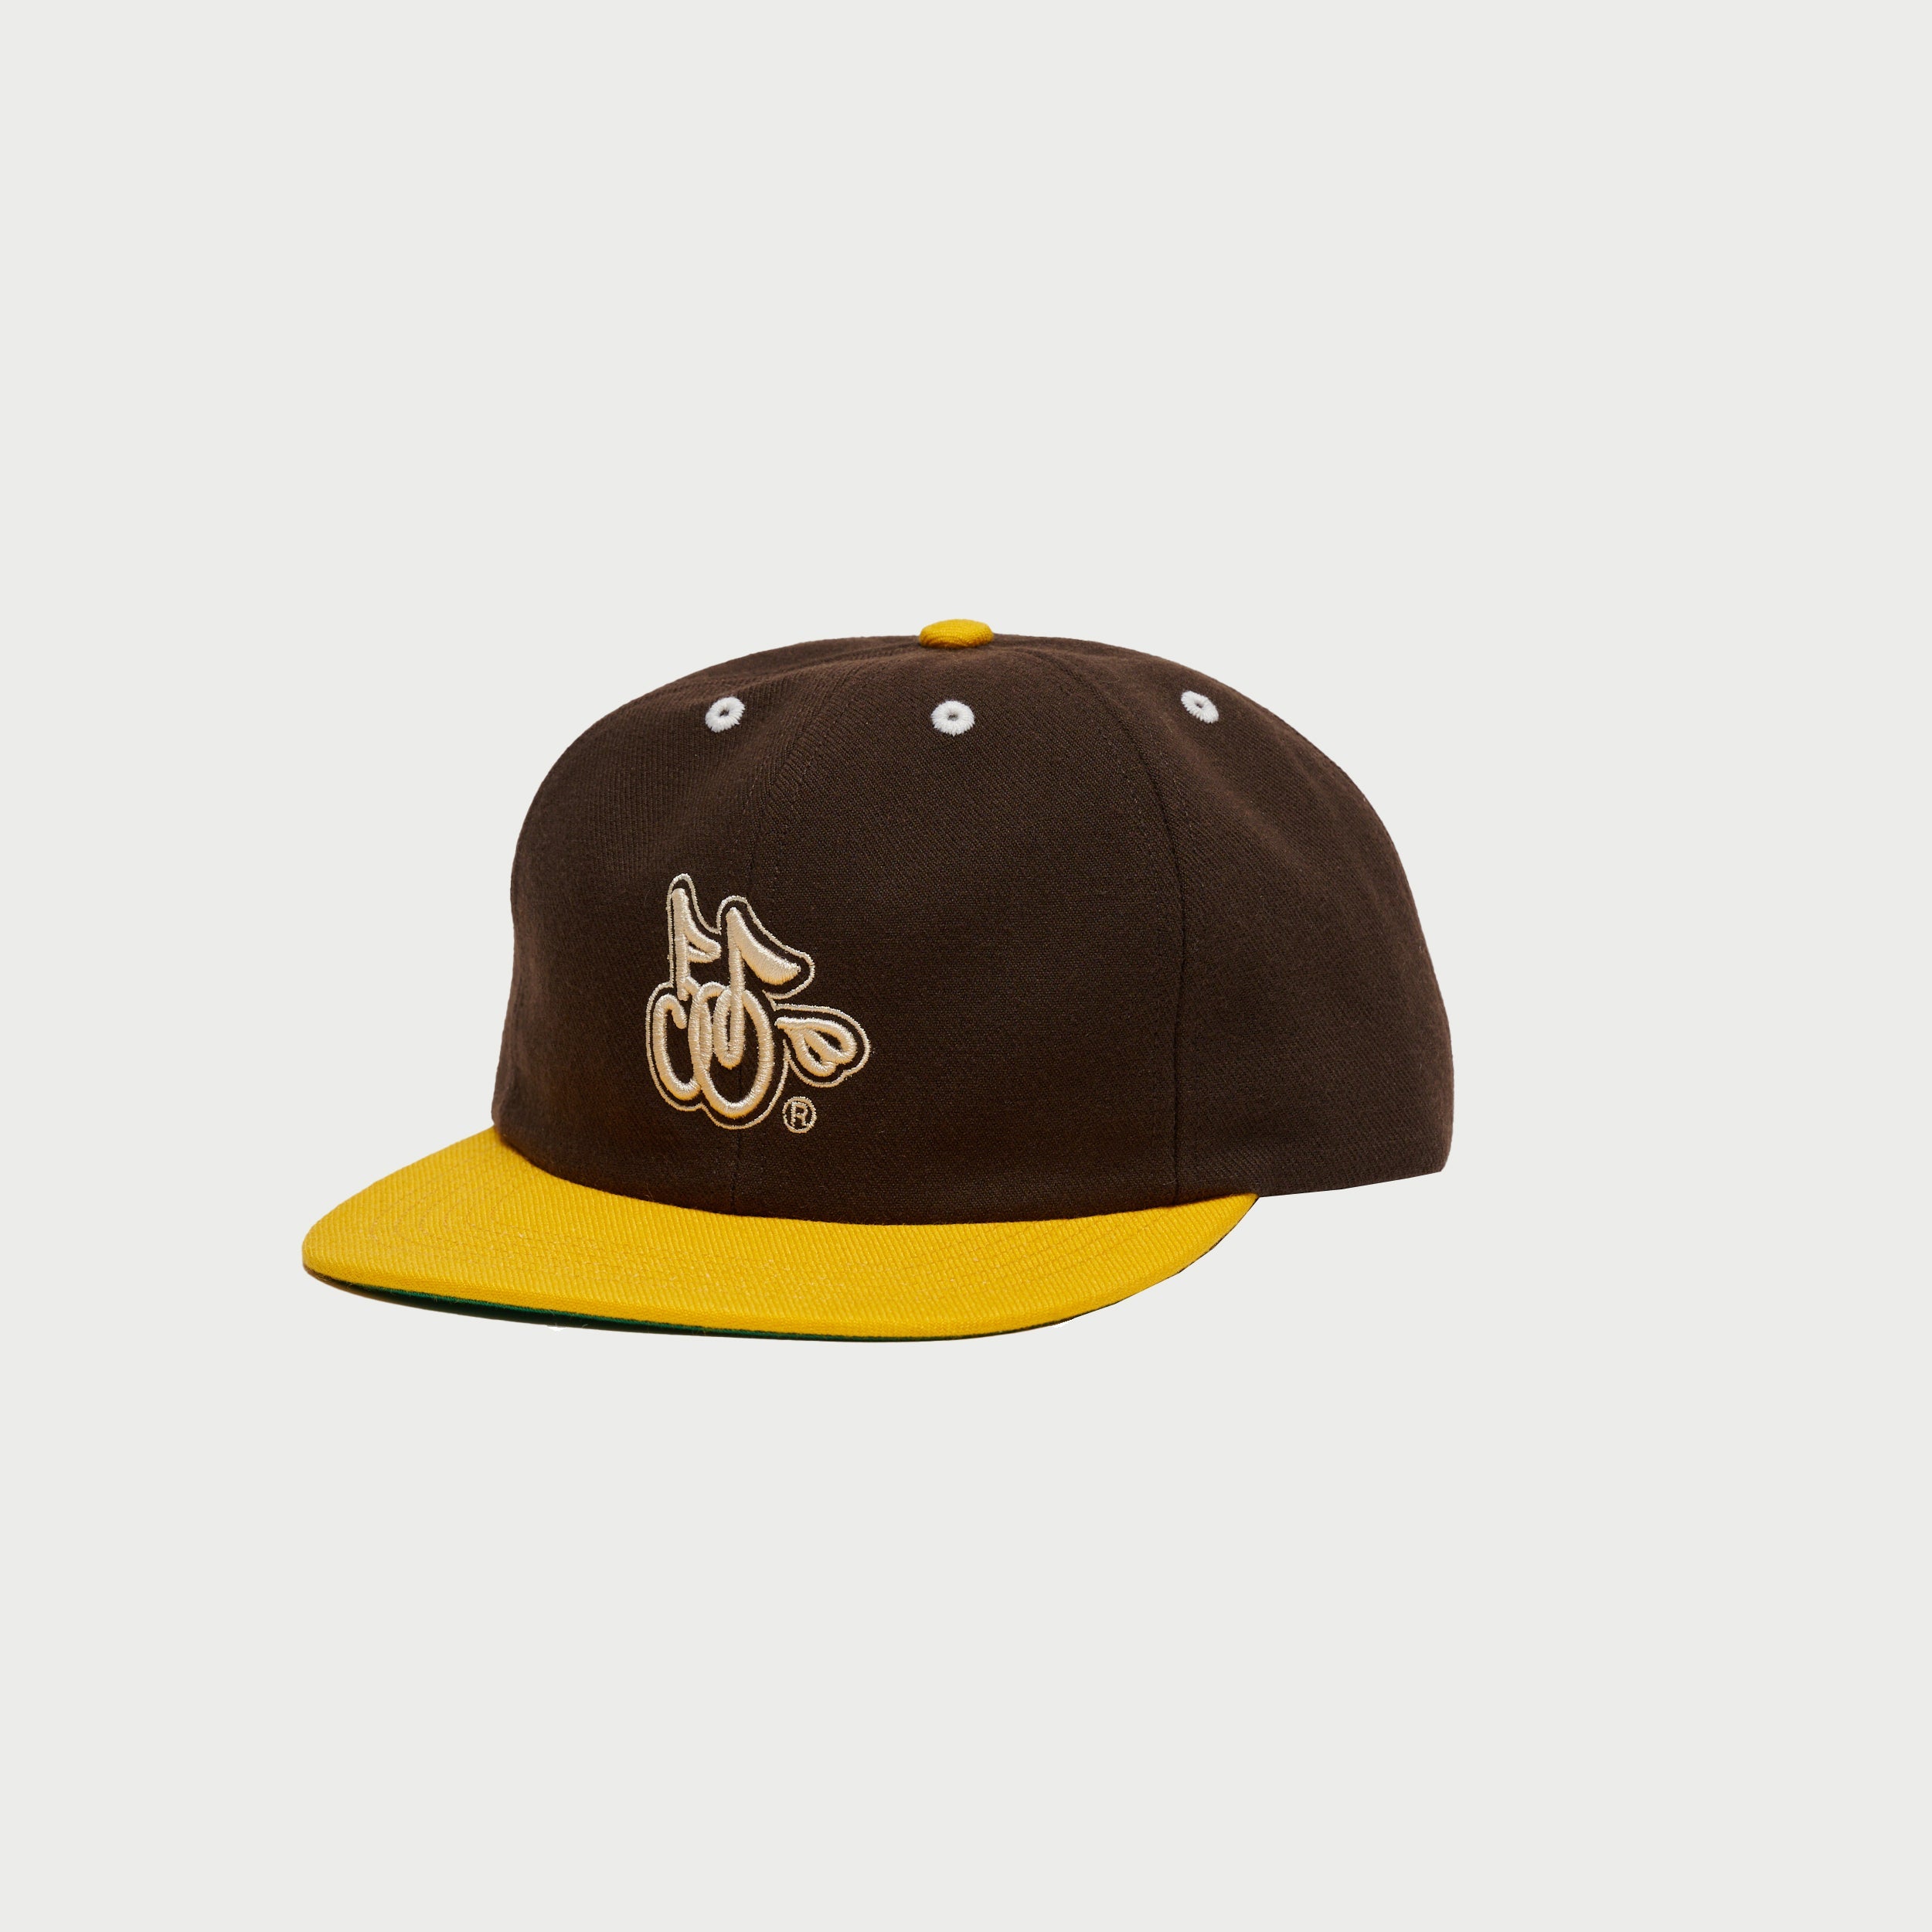 Team Hat (Padres Brown)